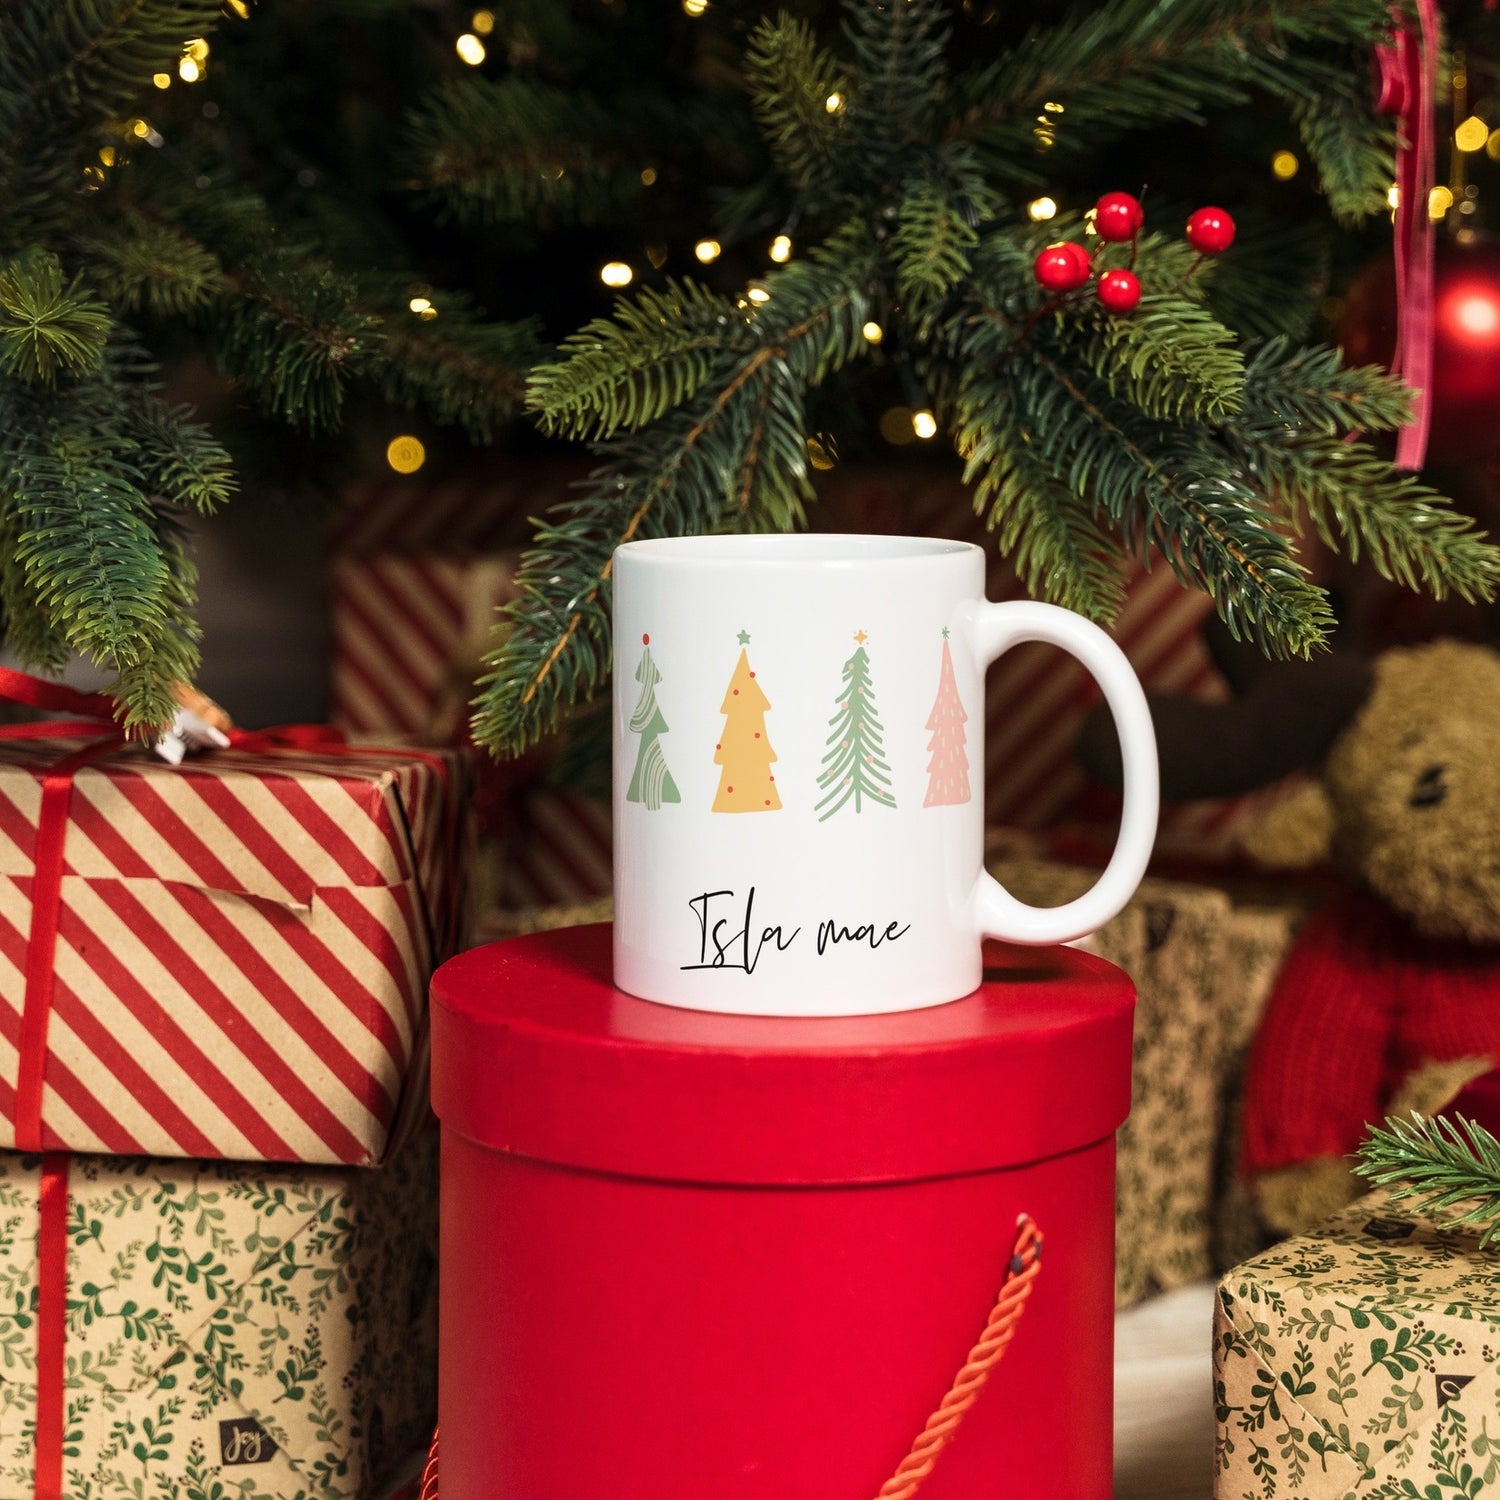 Customised Christmas mug